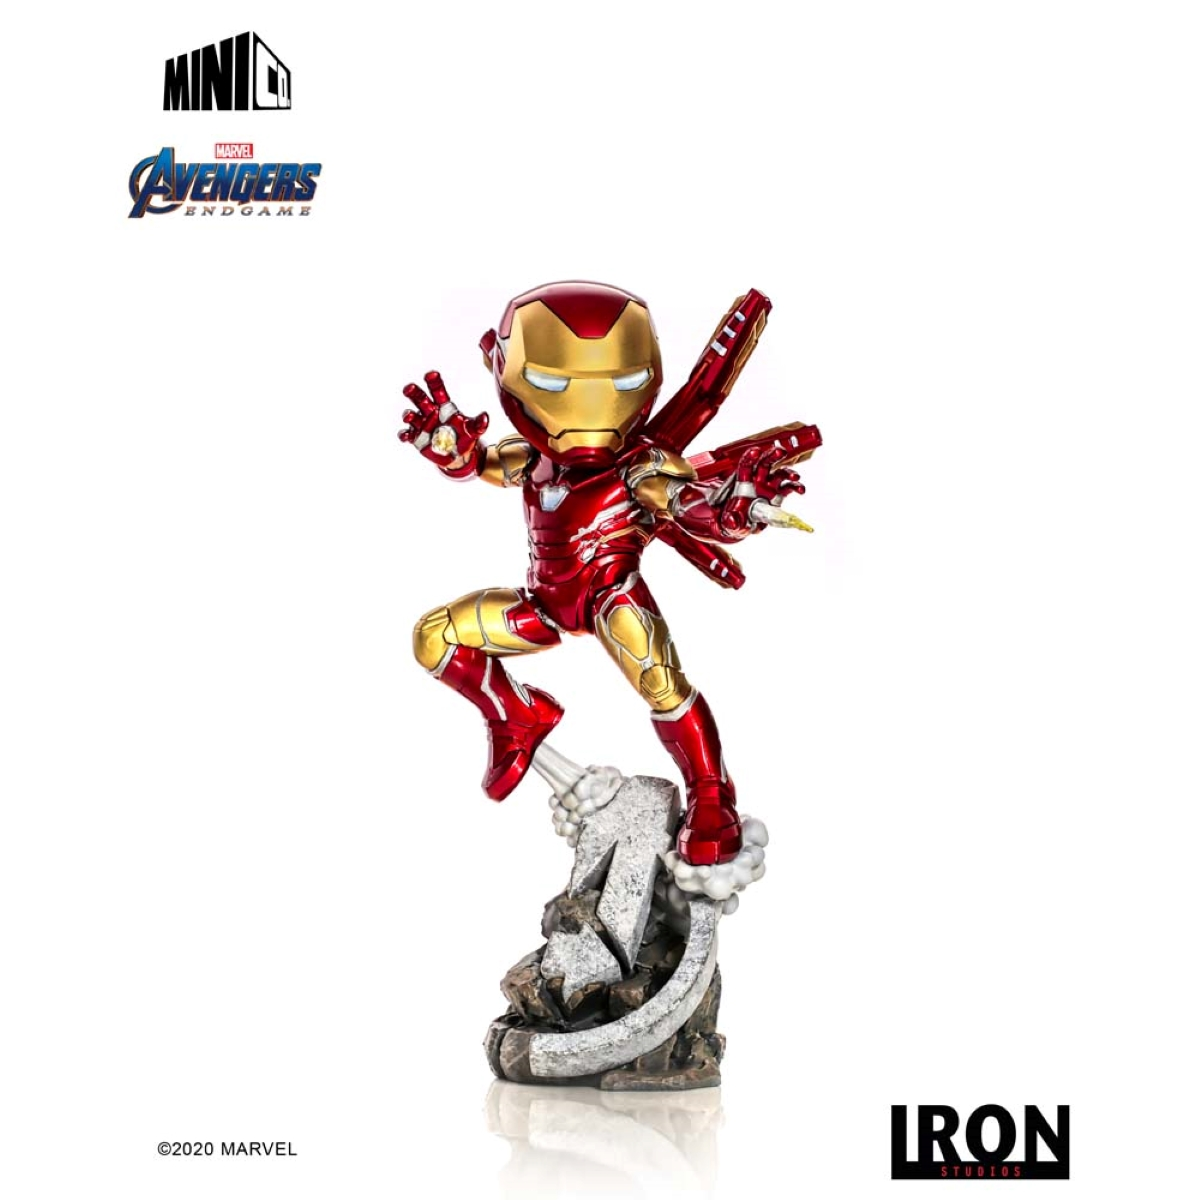 IRON STUDIOS Iron Studios & Man Figur Minico Iron figur Endgame - Avengers